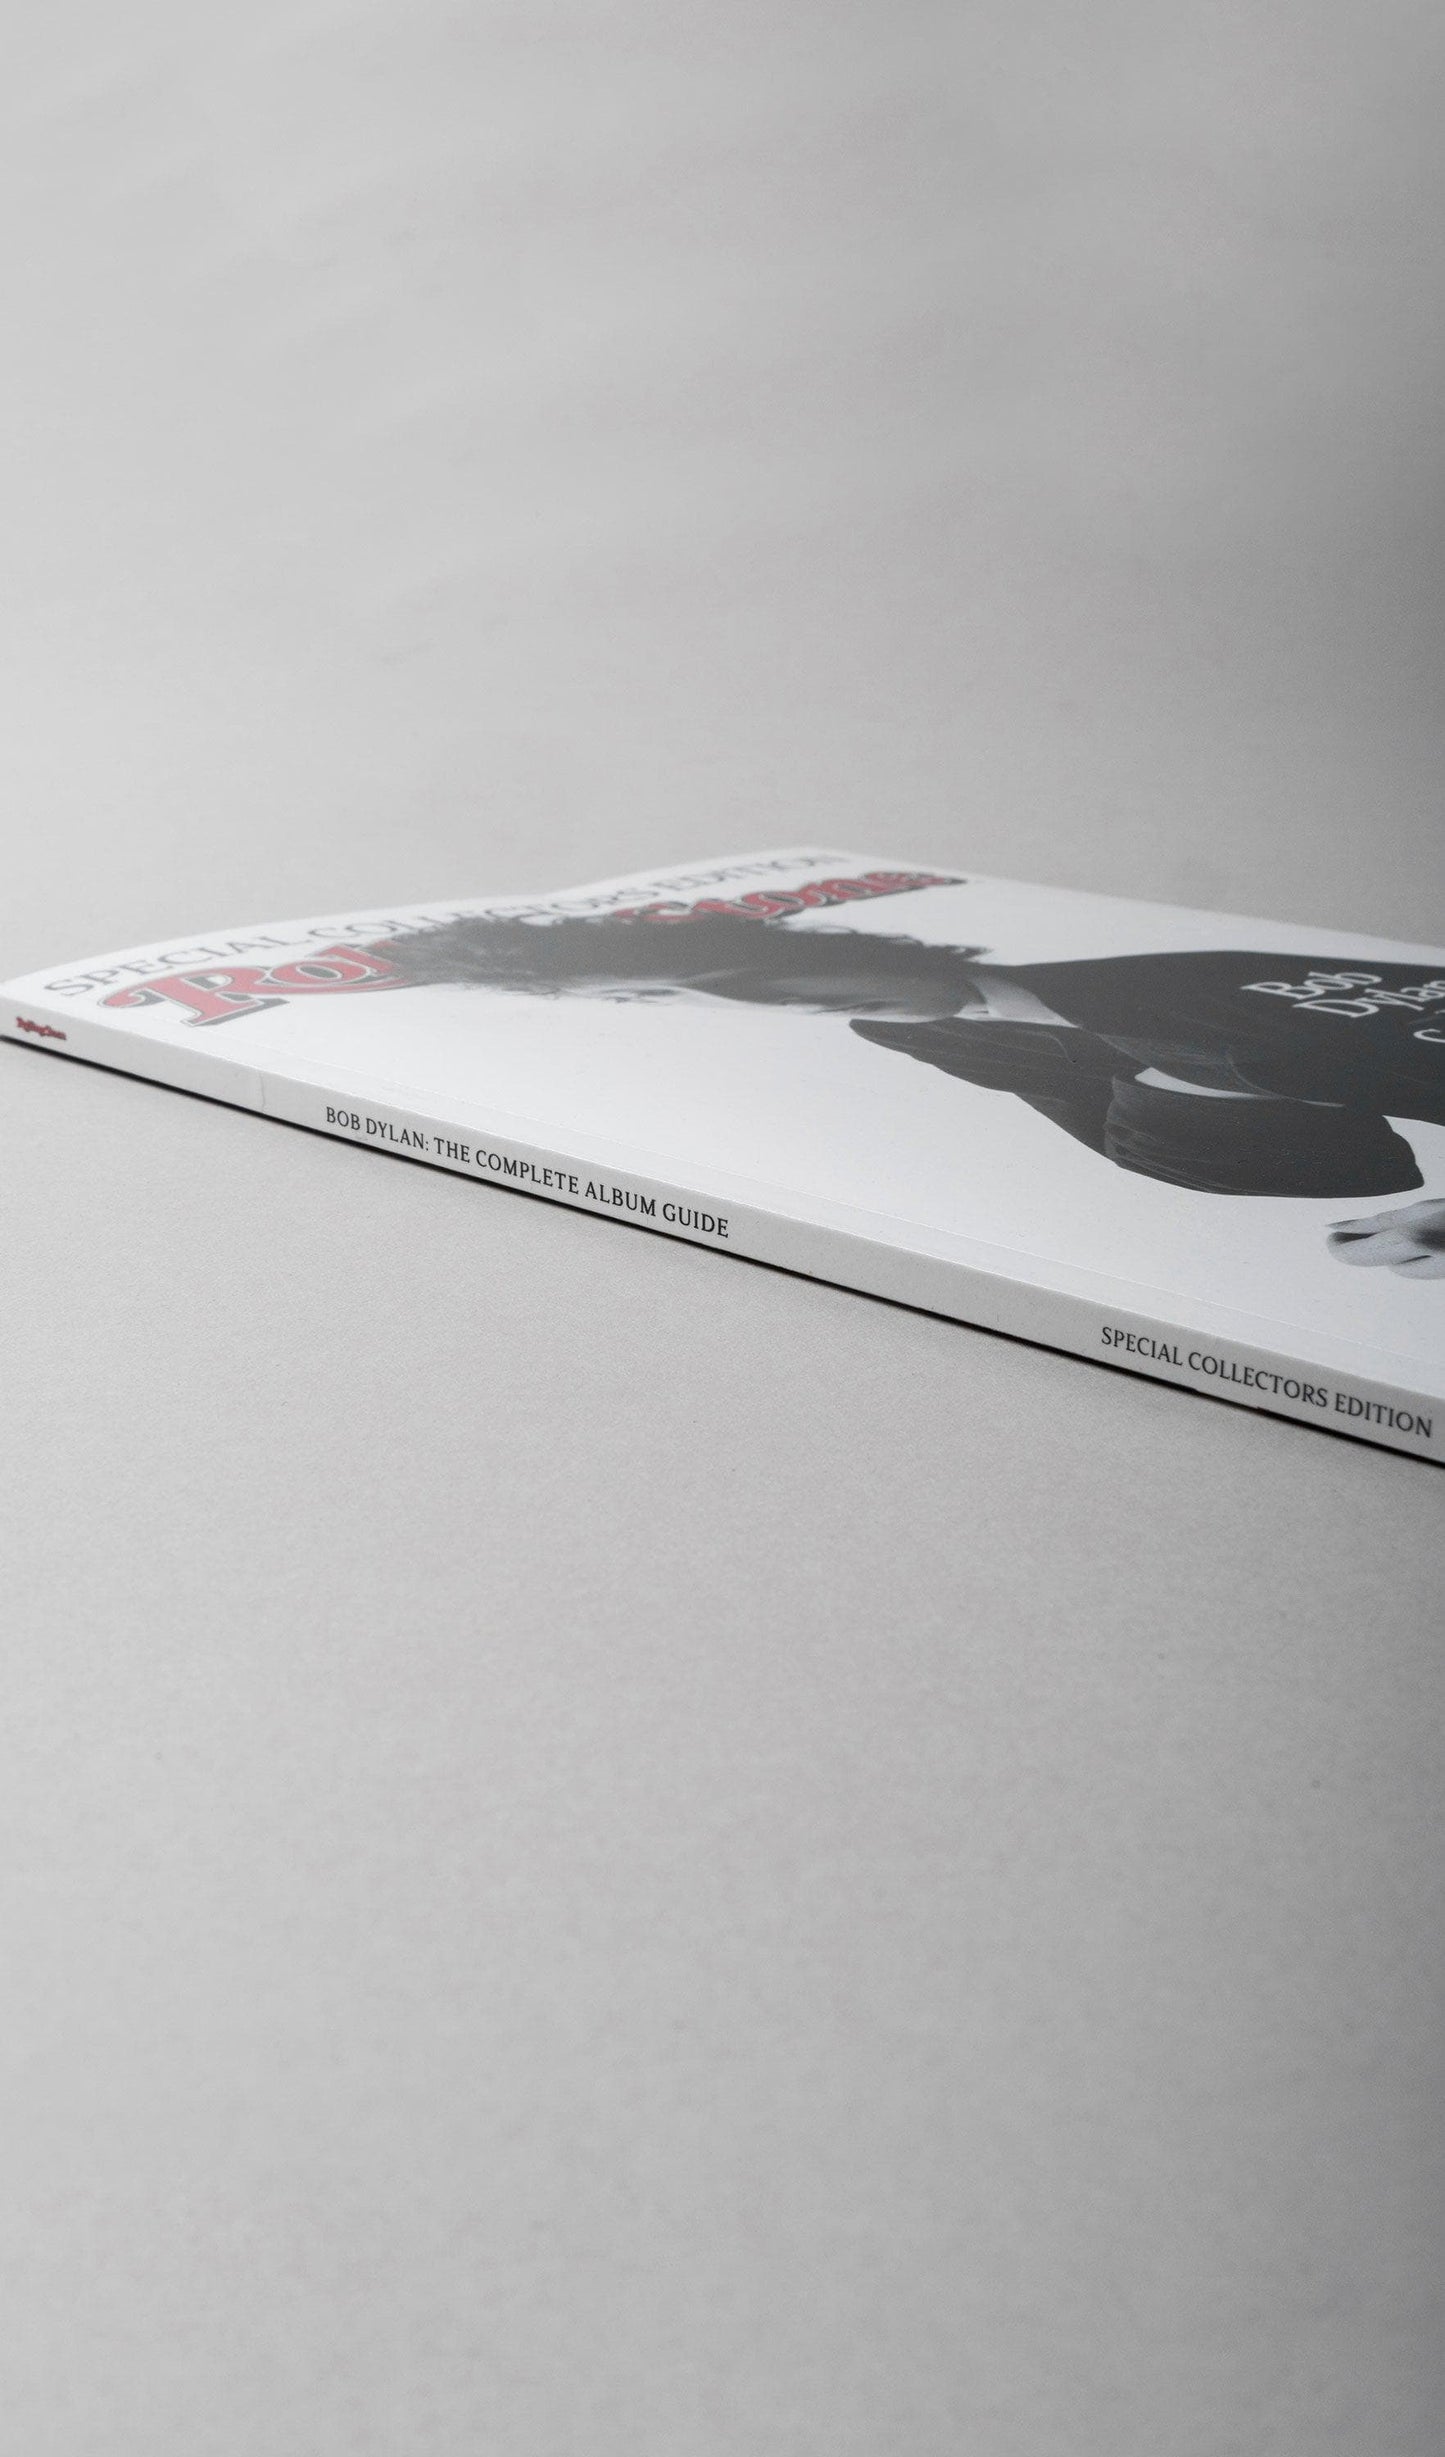 Acapella Ropa ACAPELLA MX Libro - Rolling Stone -  Bob Dylan: The Complete Album Guide